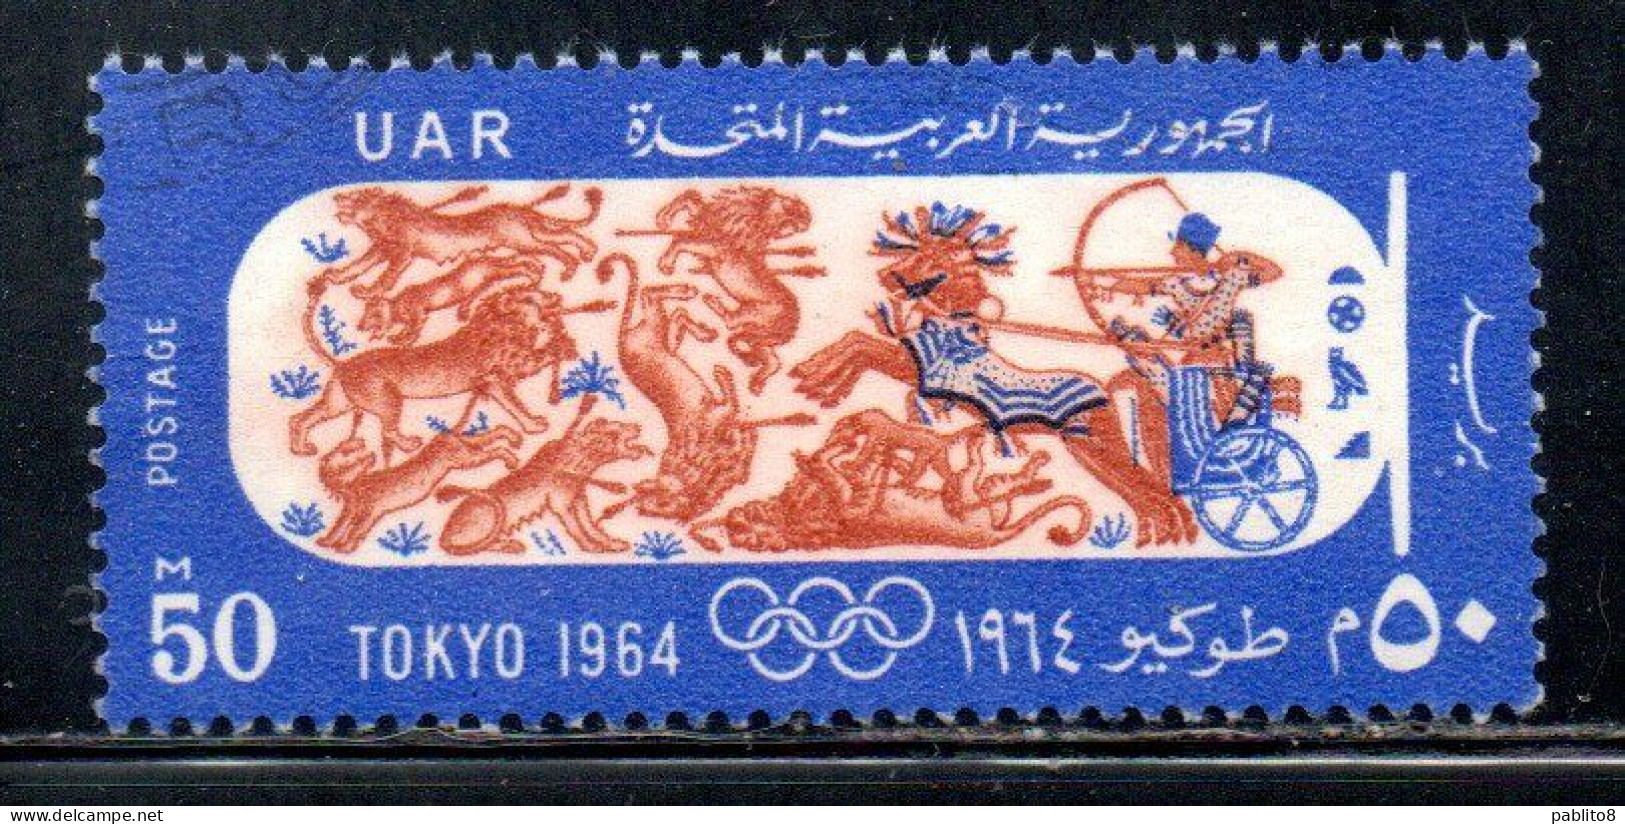 UAR EGYPT EGITTO 1964 OLYMIC GAMES TOKYO PHARAOH IN CHARIOT HUNTING 50m MH - Ongebruikt